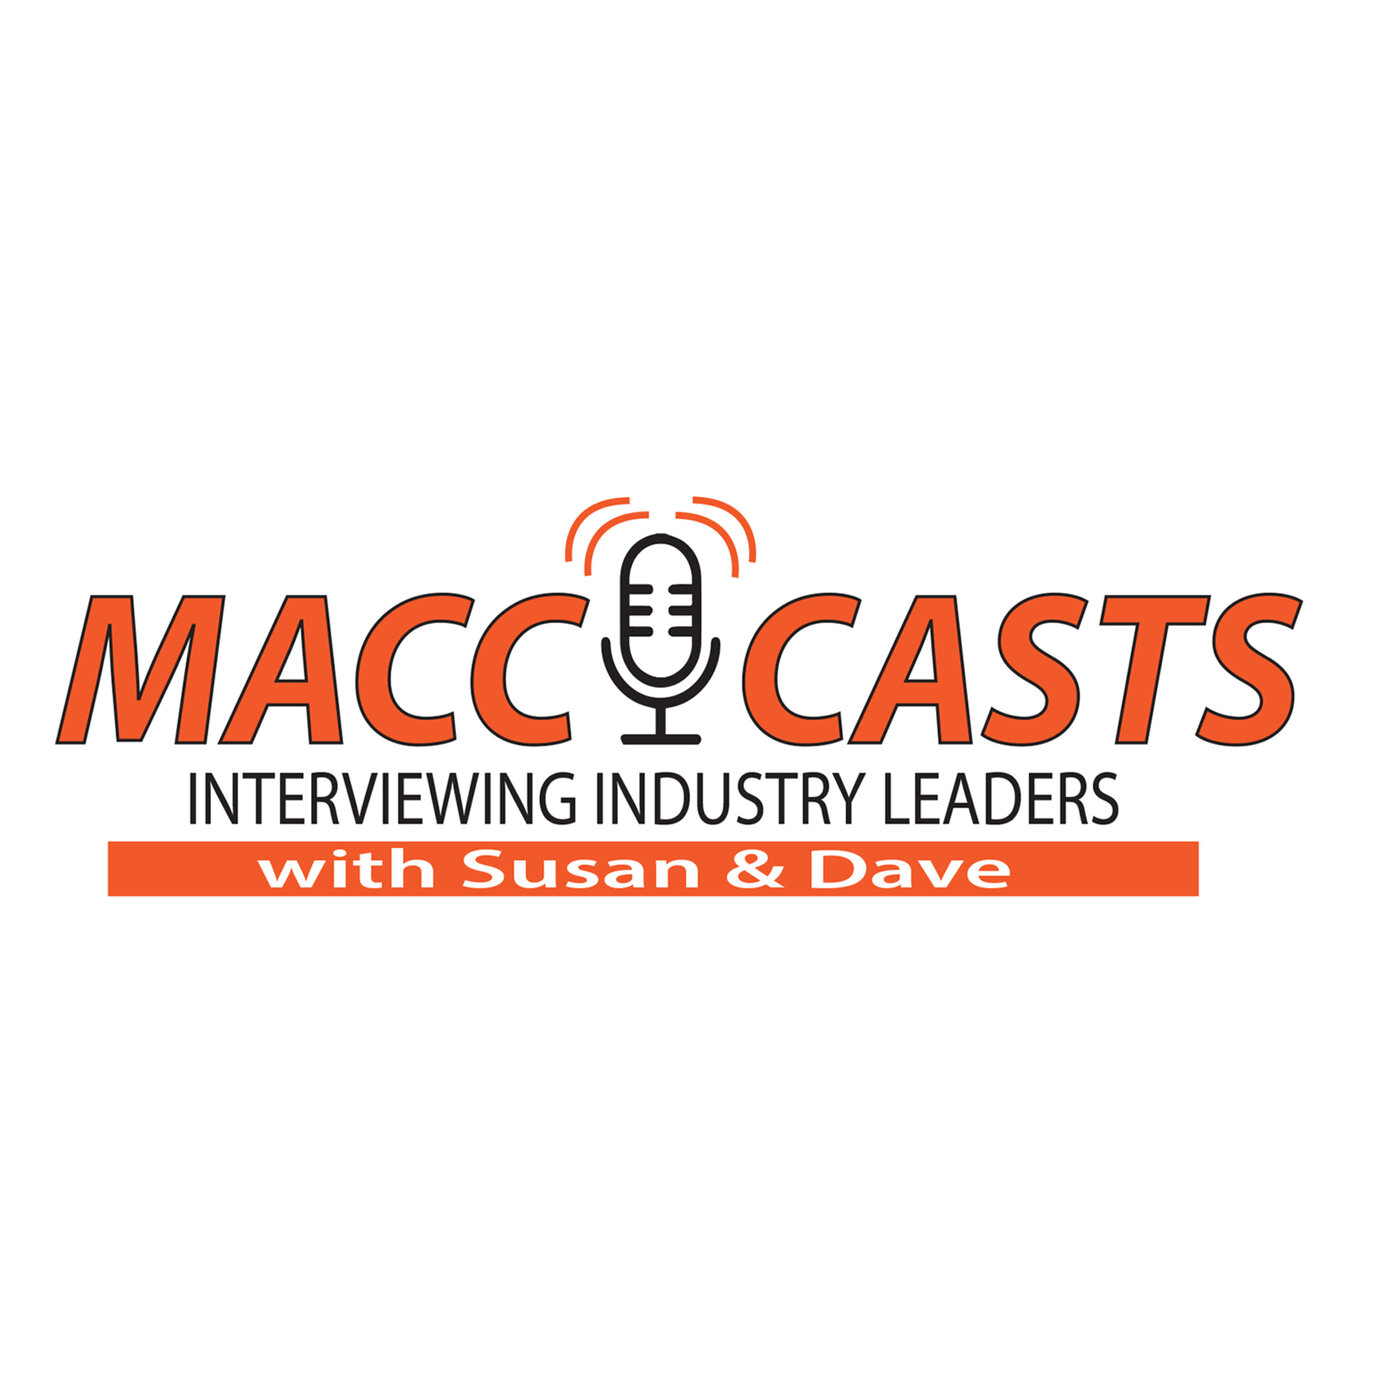 MACC Casts